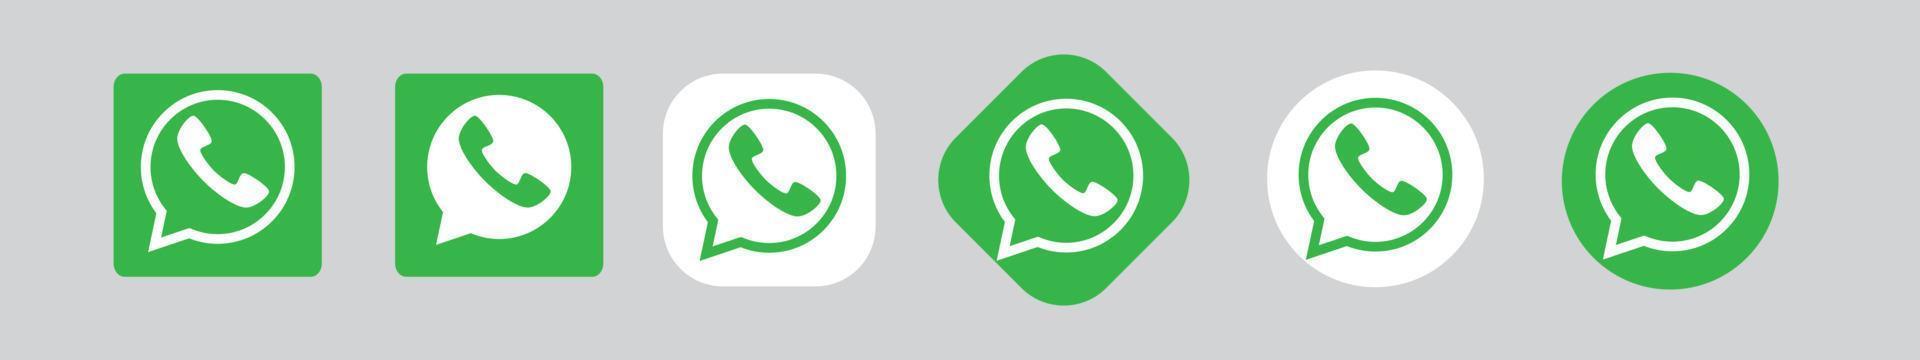 conjunto de ícones vetoriais do whatsapp vetor